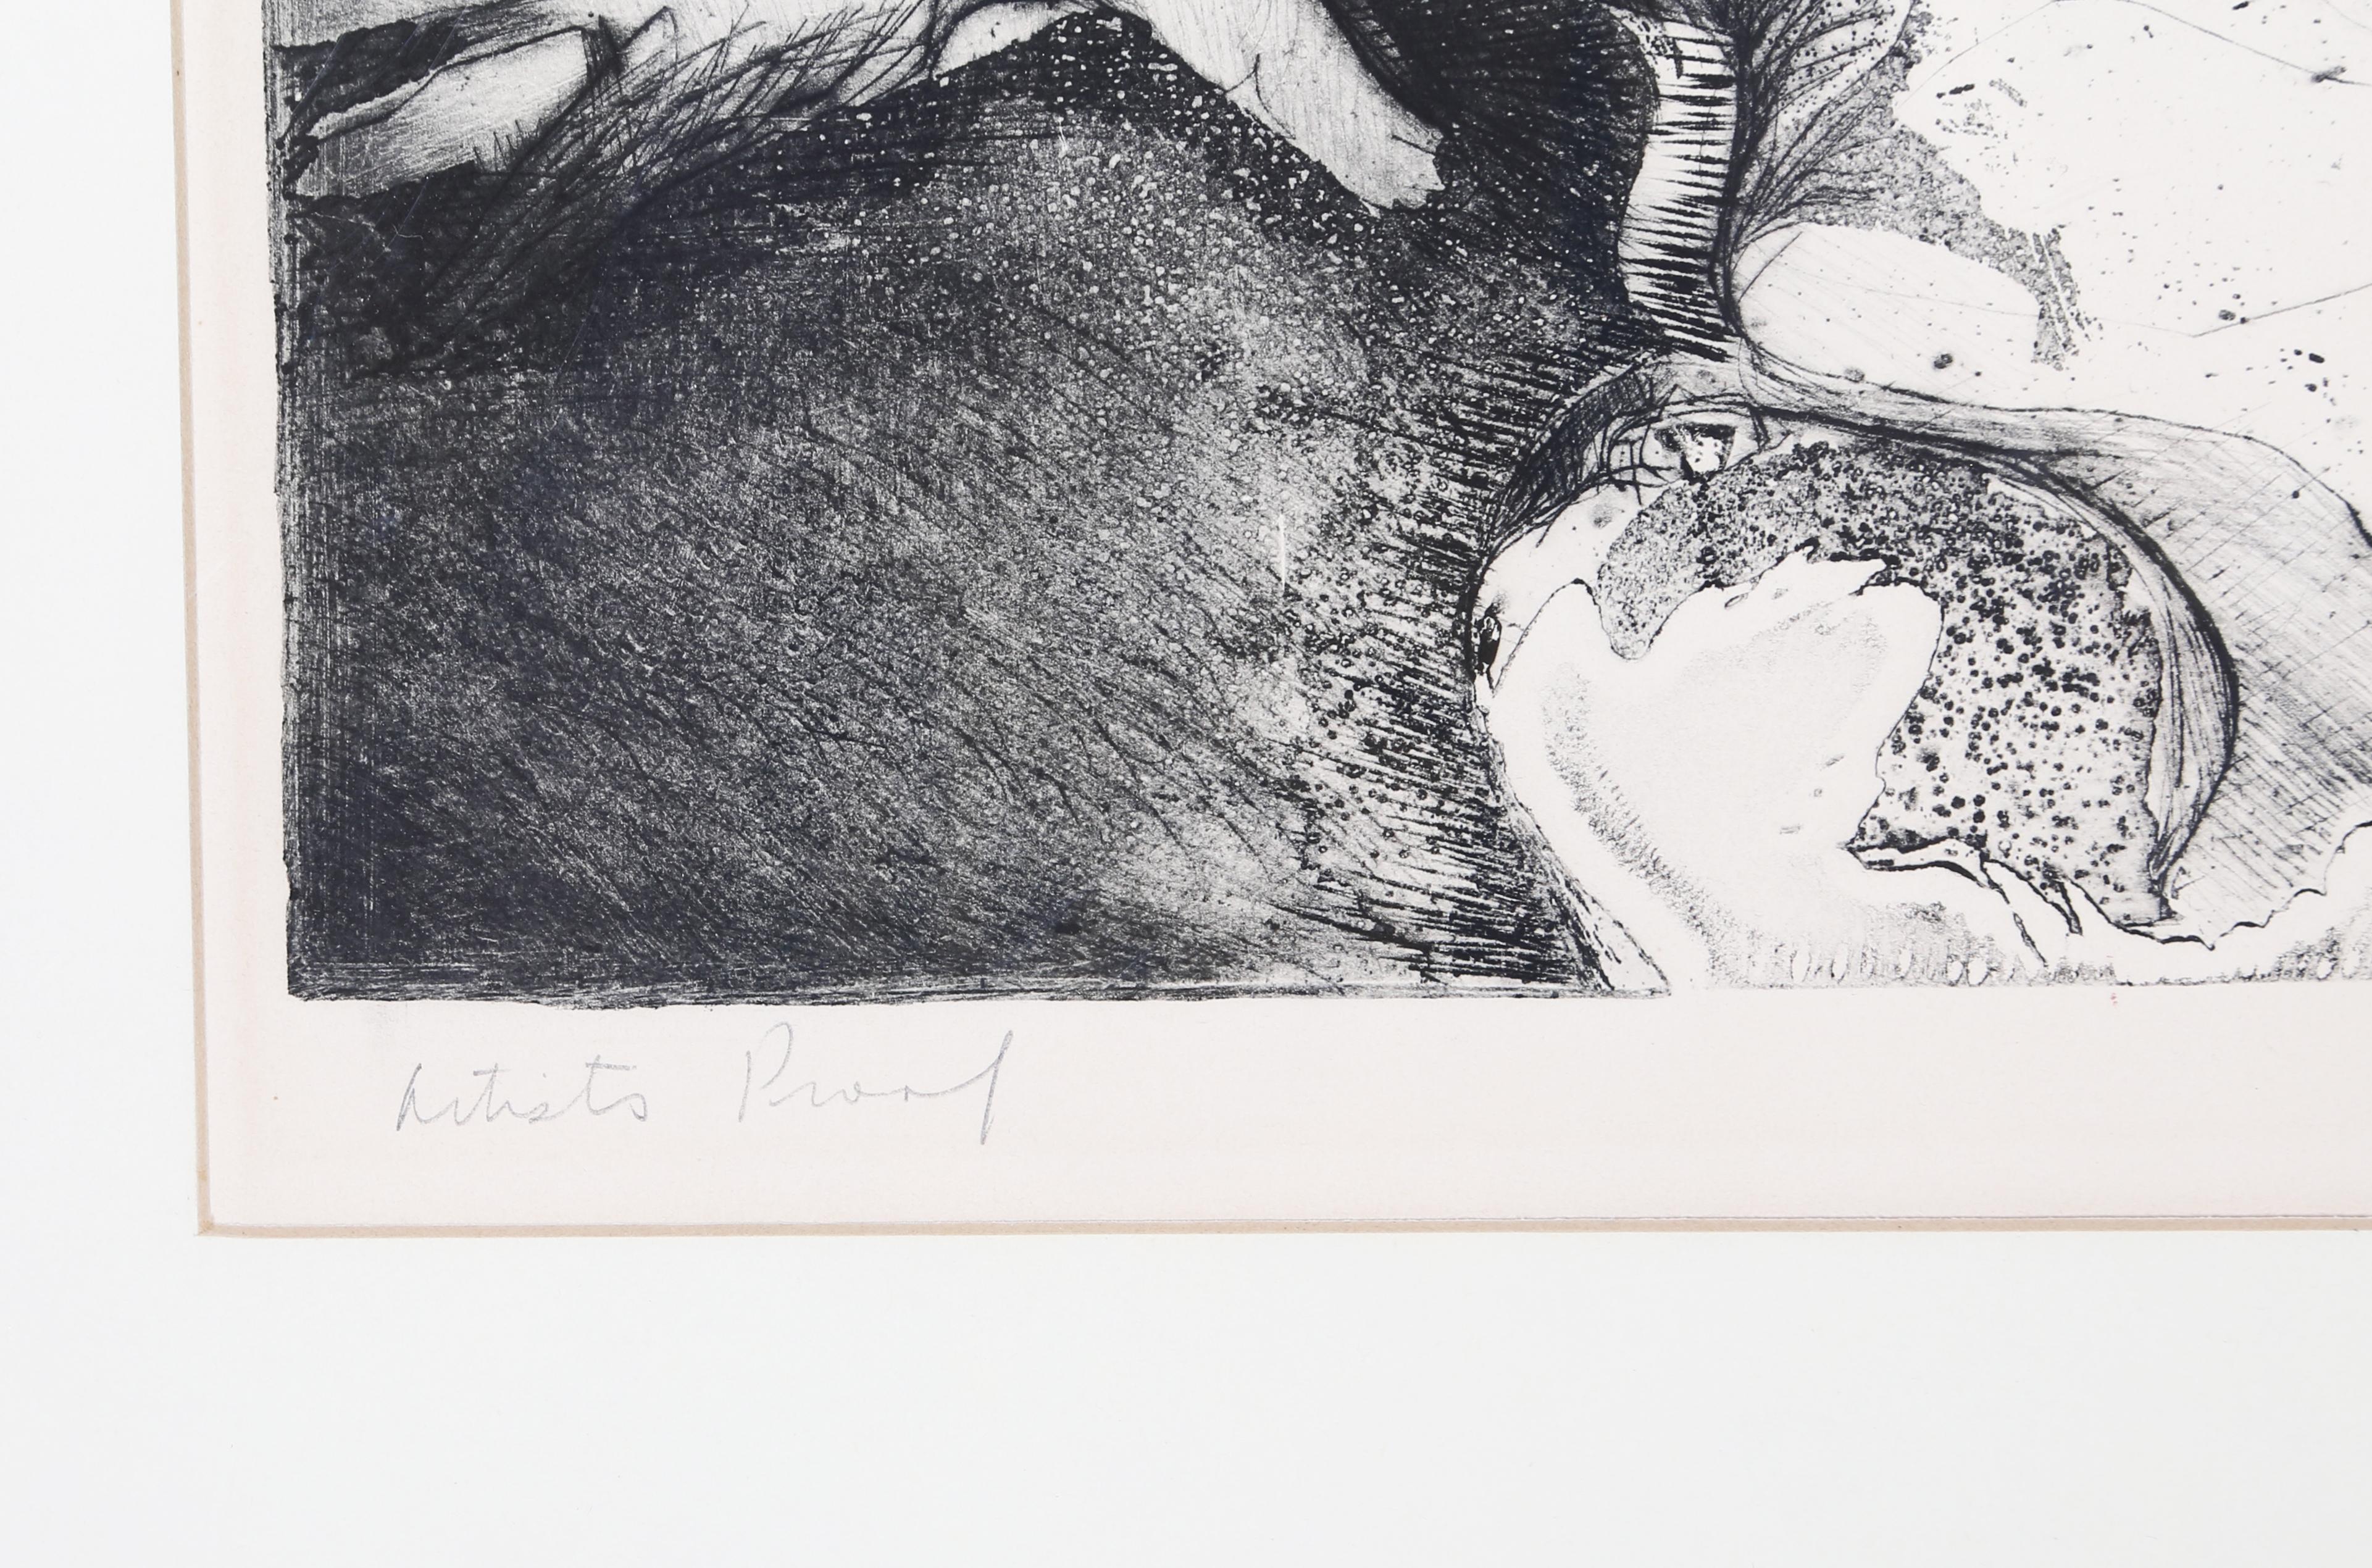 Diese abstrakte Figur der feministischen modernen Künstlerin Joan Semmel ist fast grotesk in ihrer Darstellung eines nackten Körpers, der auf dem Boden kauert. Ihre Hände stützen sich auf dem Boden ab, die Schultern hängen, der Kopf hängt, in der